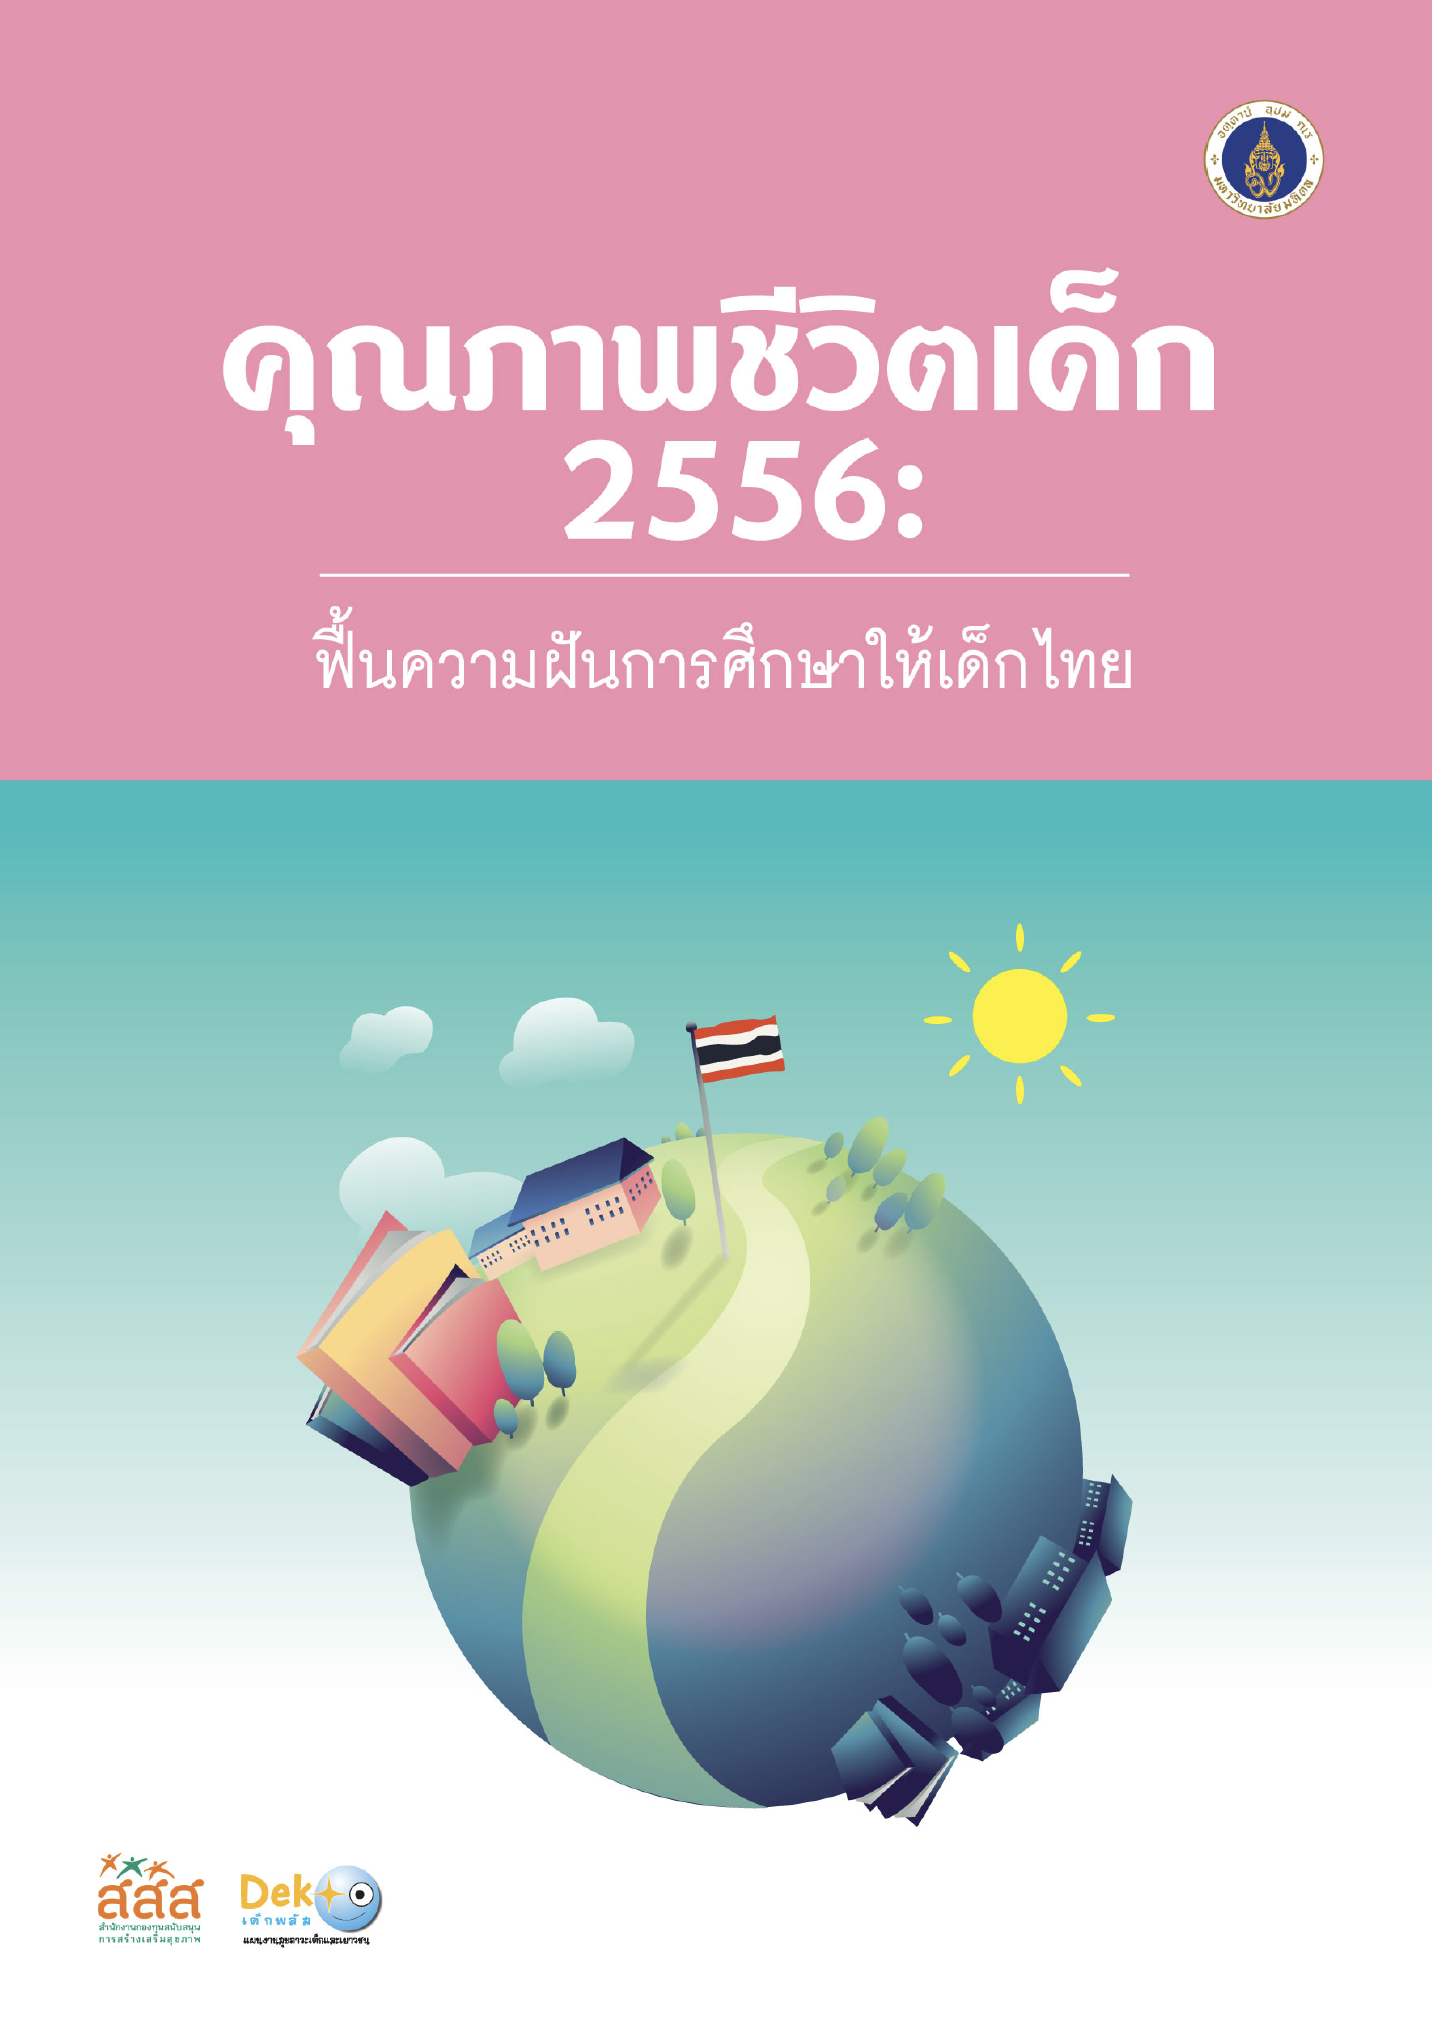 คุณภาพชีวิตเด็ก 2556 : ฟื้นความฝันการศึกษาให้เด็กไทย